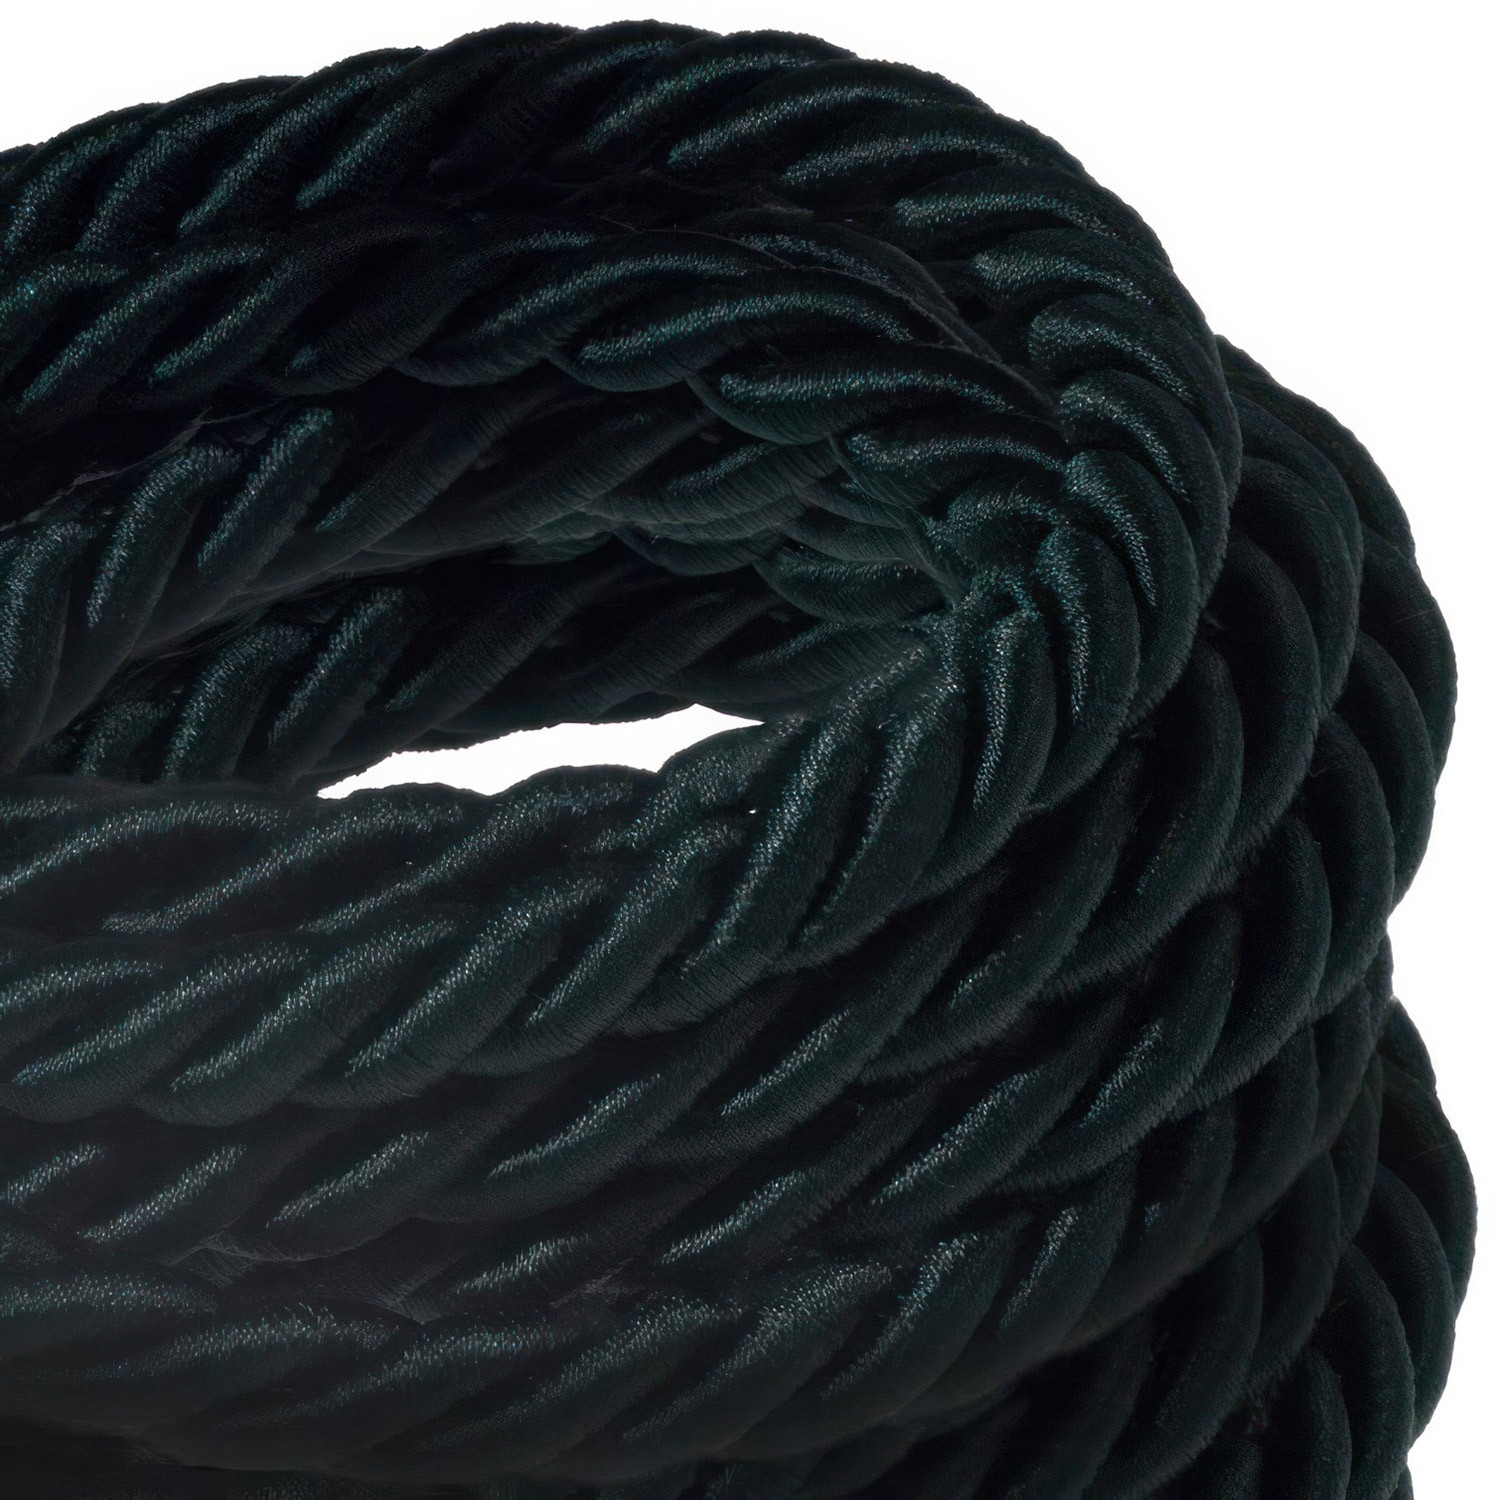 XL električna vrv, električen kabel 3x0,75, prekrit s temno zelenim svetlečim blagom. Premer 16mm.